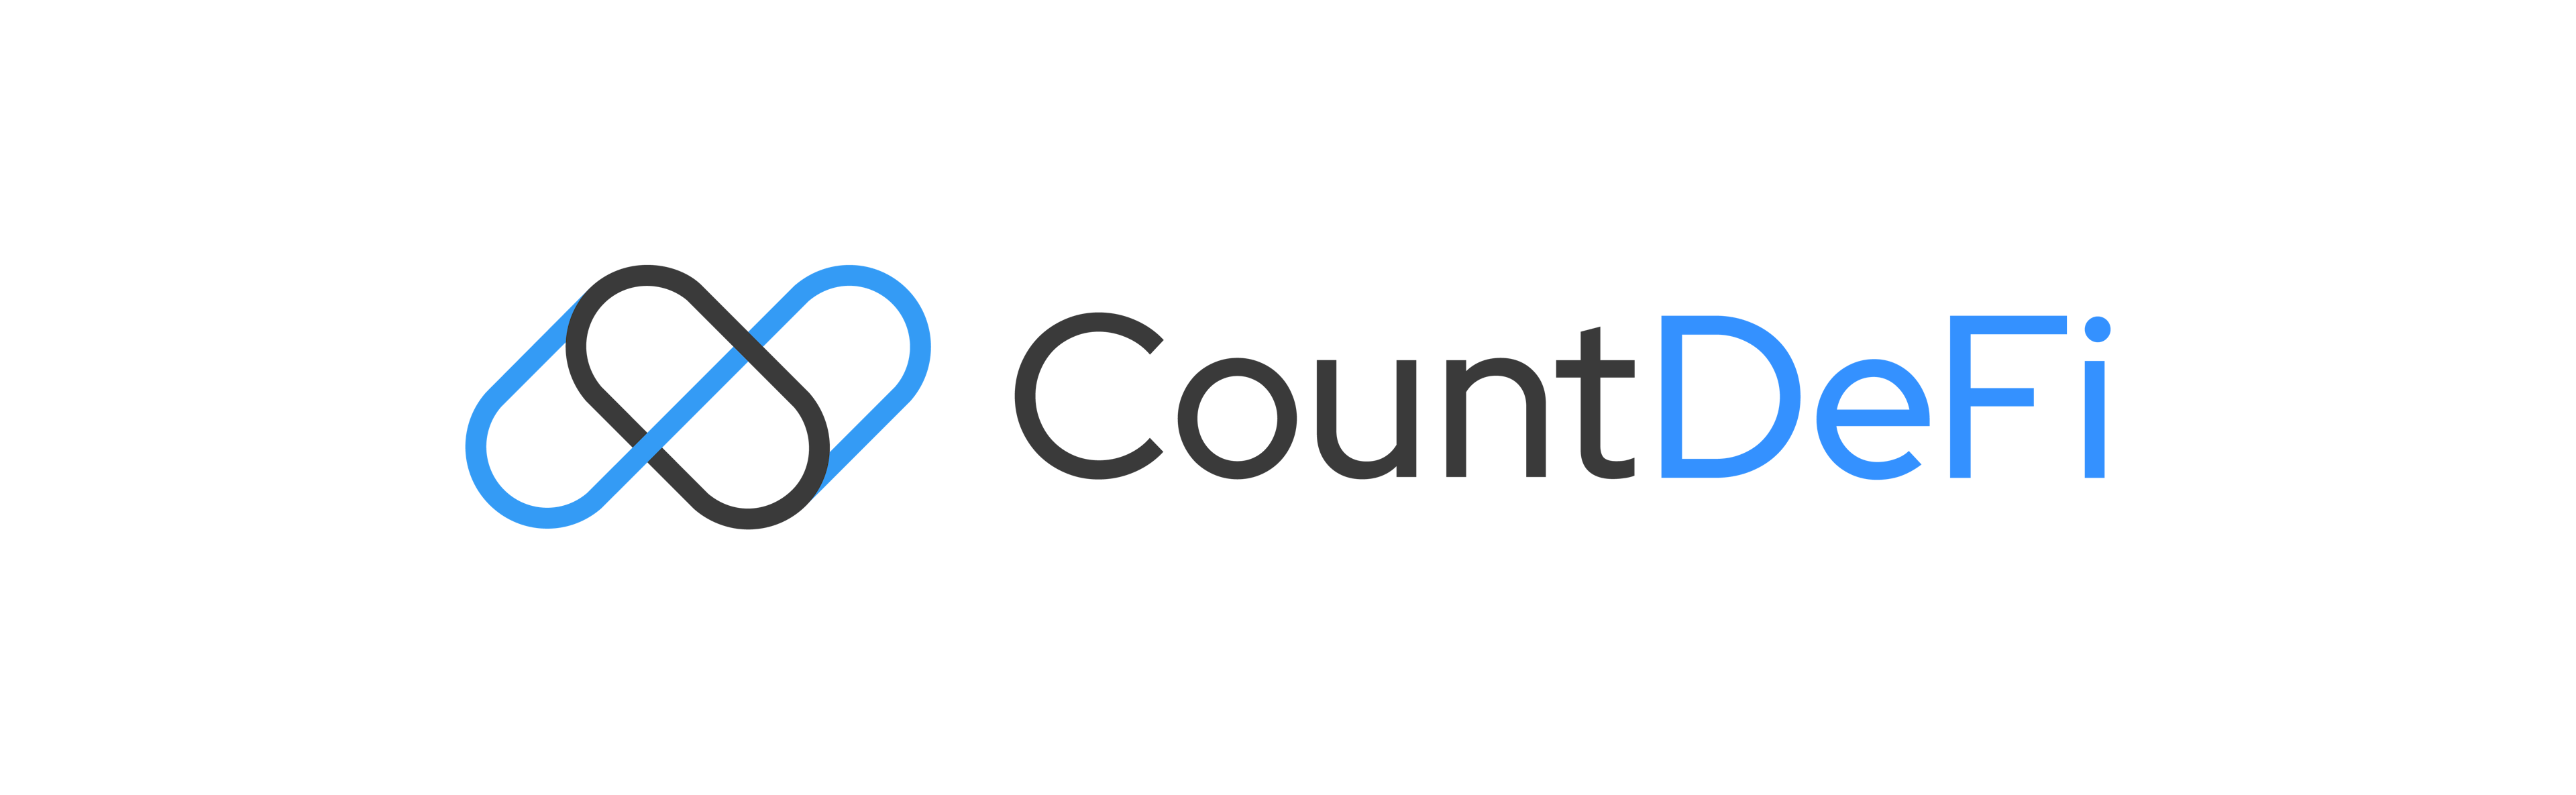 CountDeFi logo